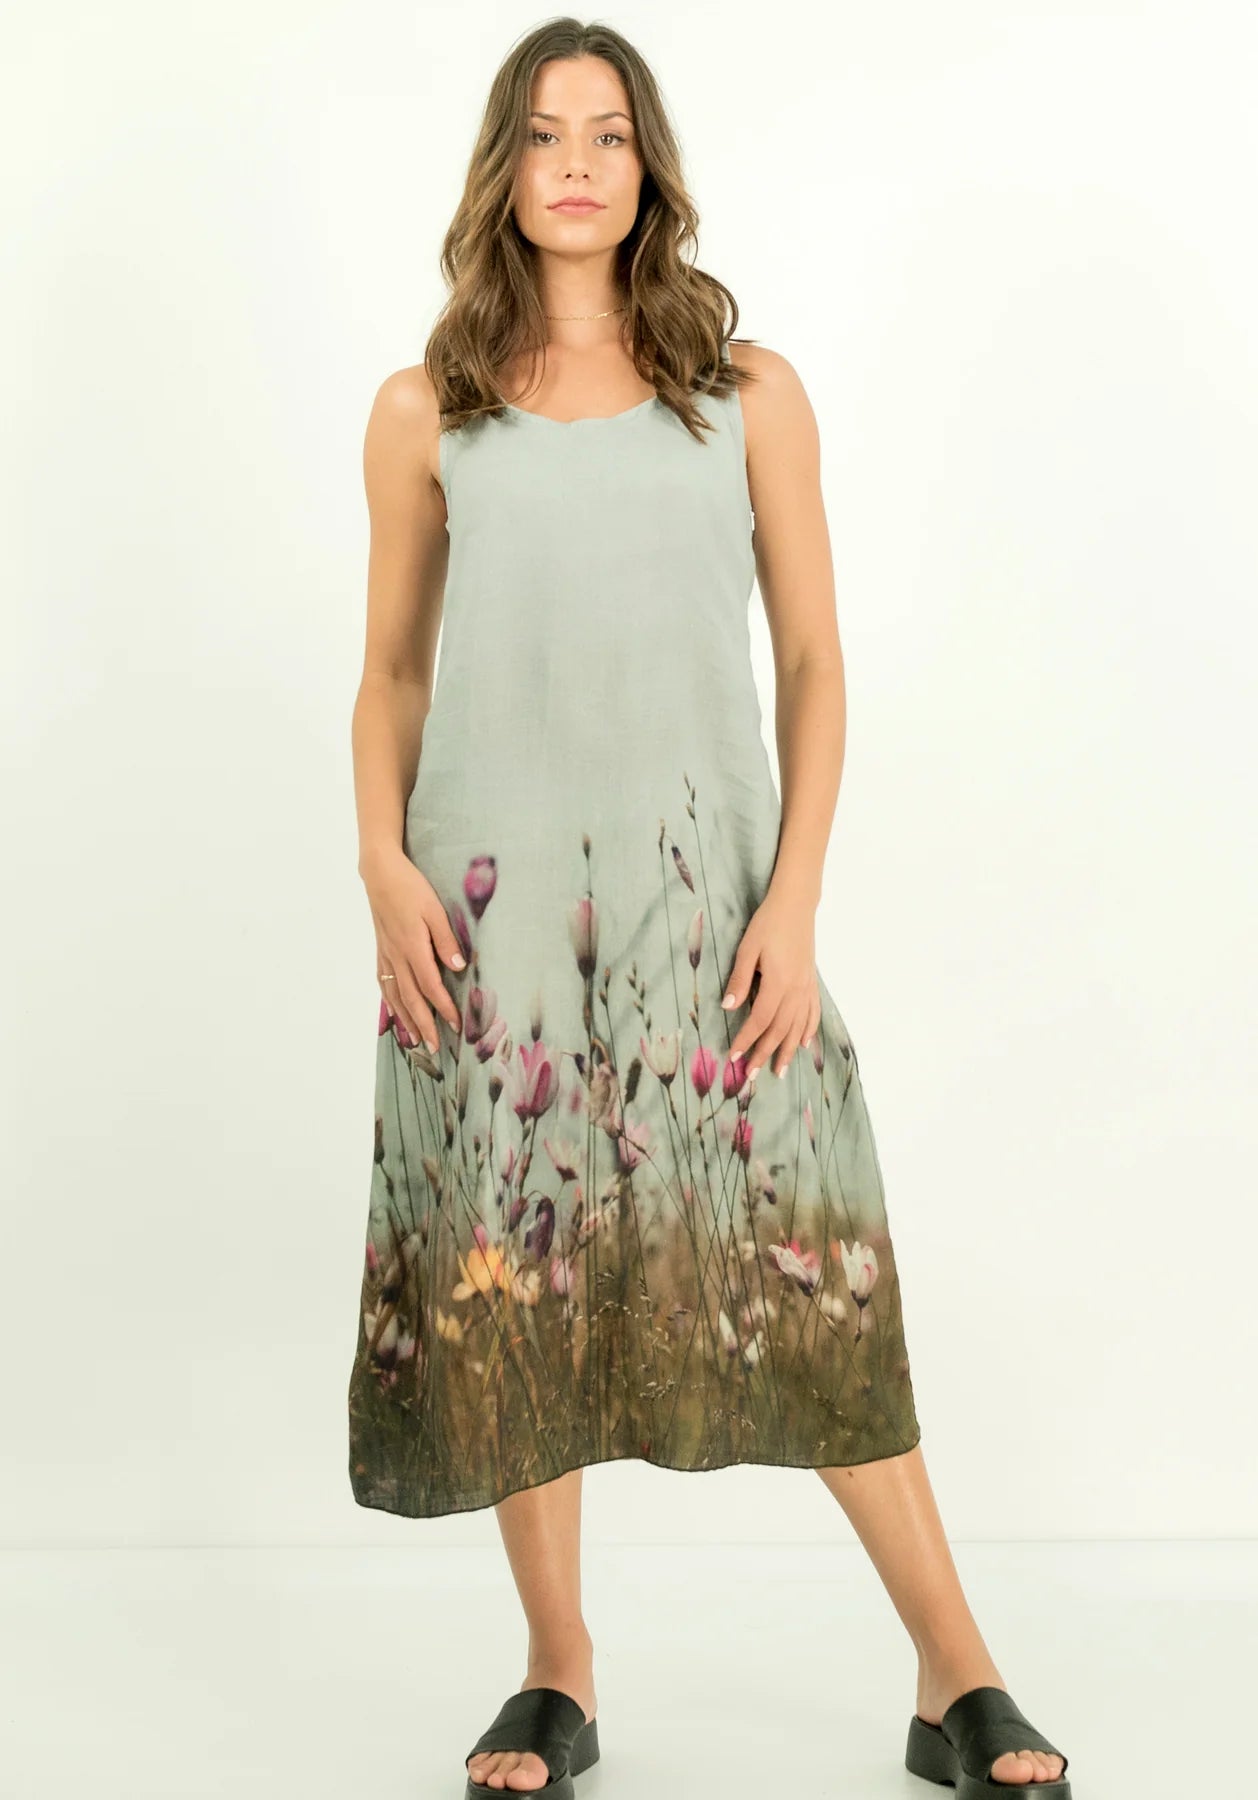 Harriet Jane Linen Tank Dress Flowering Seaside Meadow